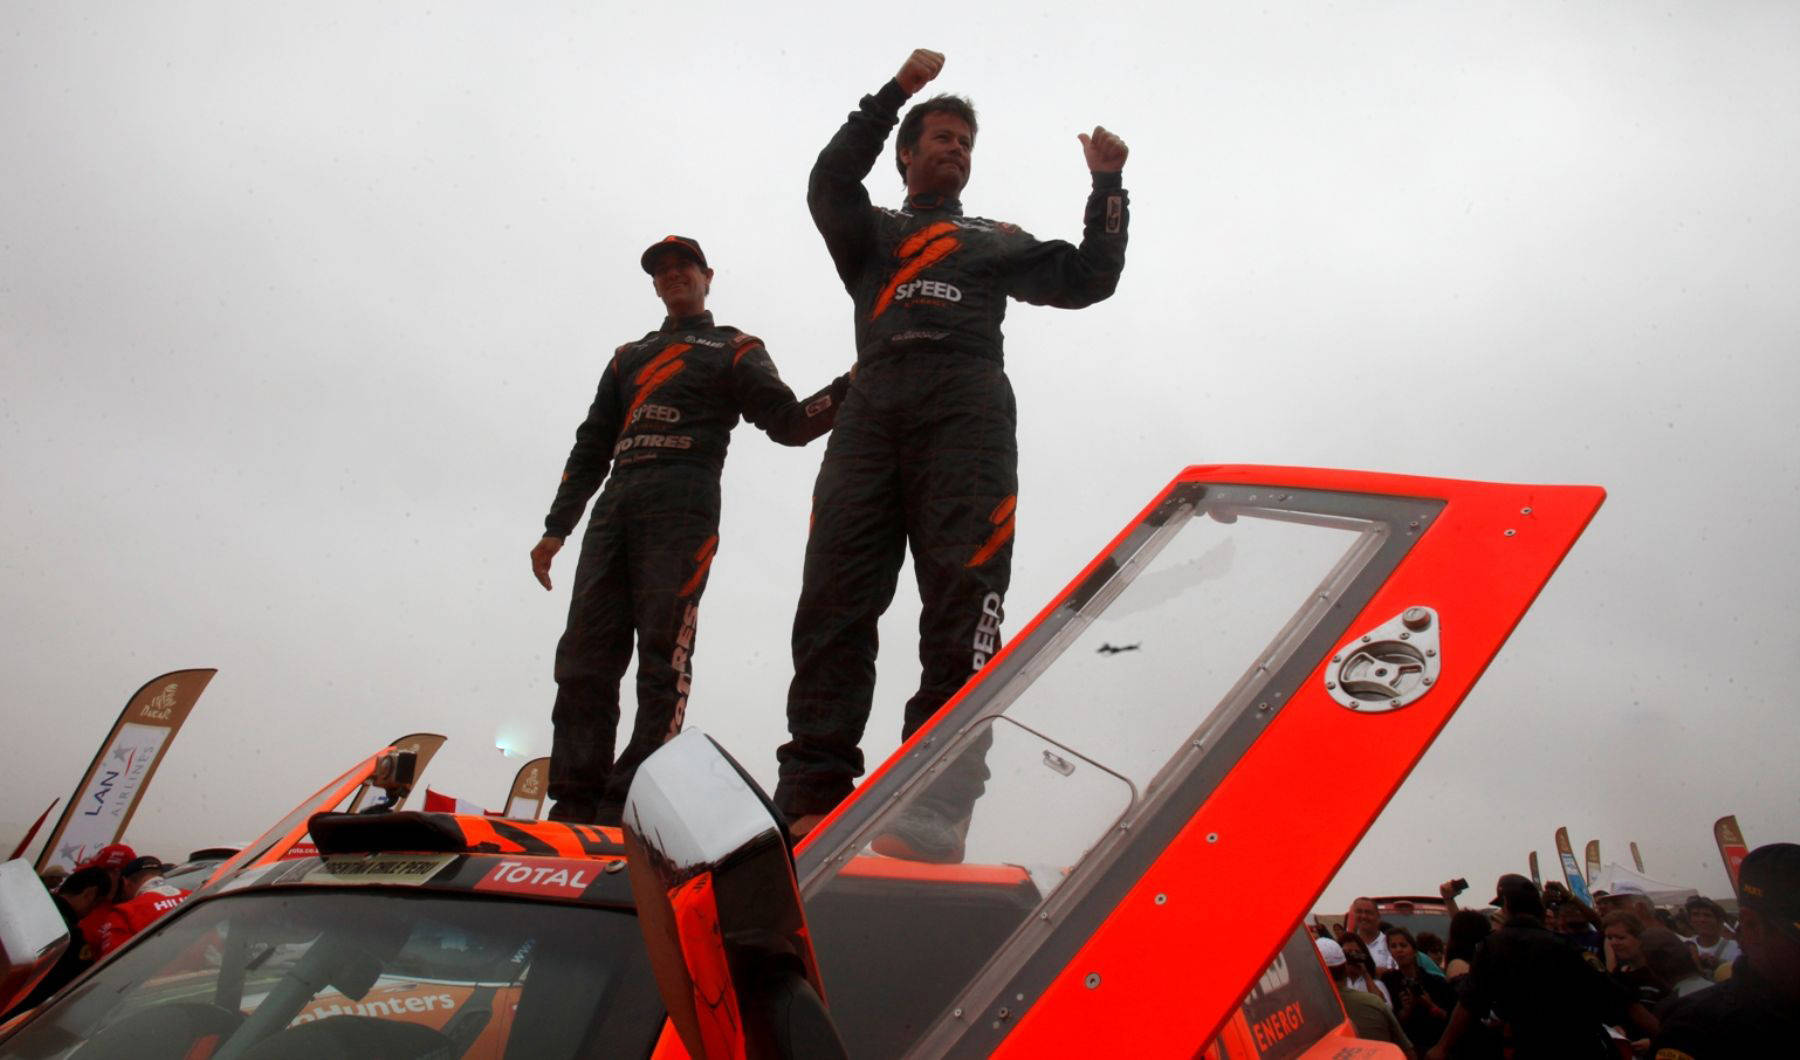 2012年1月15日,罗比·戈登(右)获得达喀尔拉力赛汽车组最后一个赛段